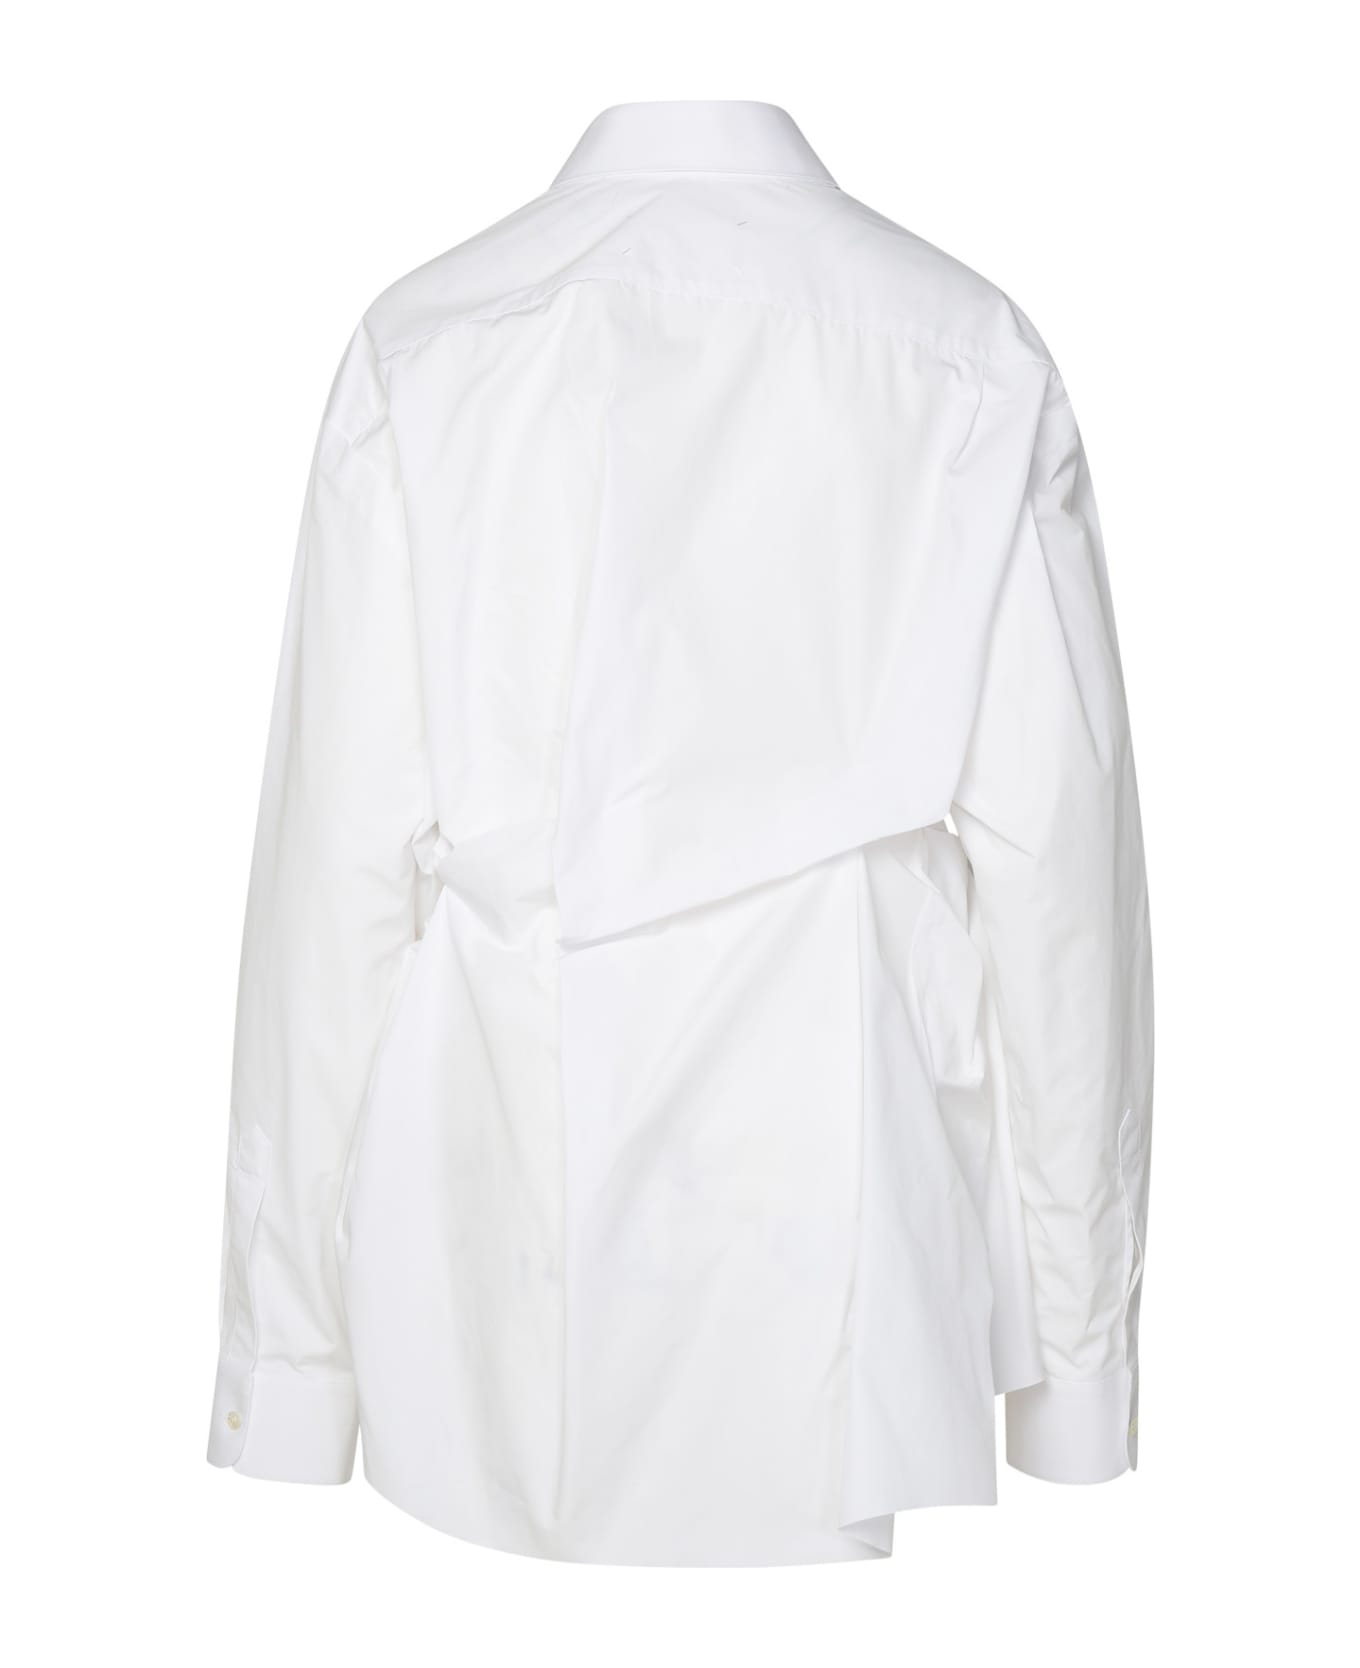 Maison Margiela White Cotton Shirt - White